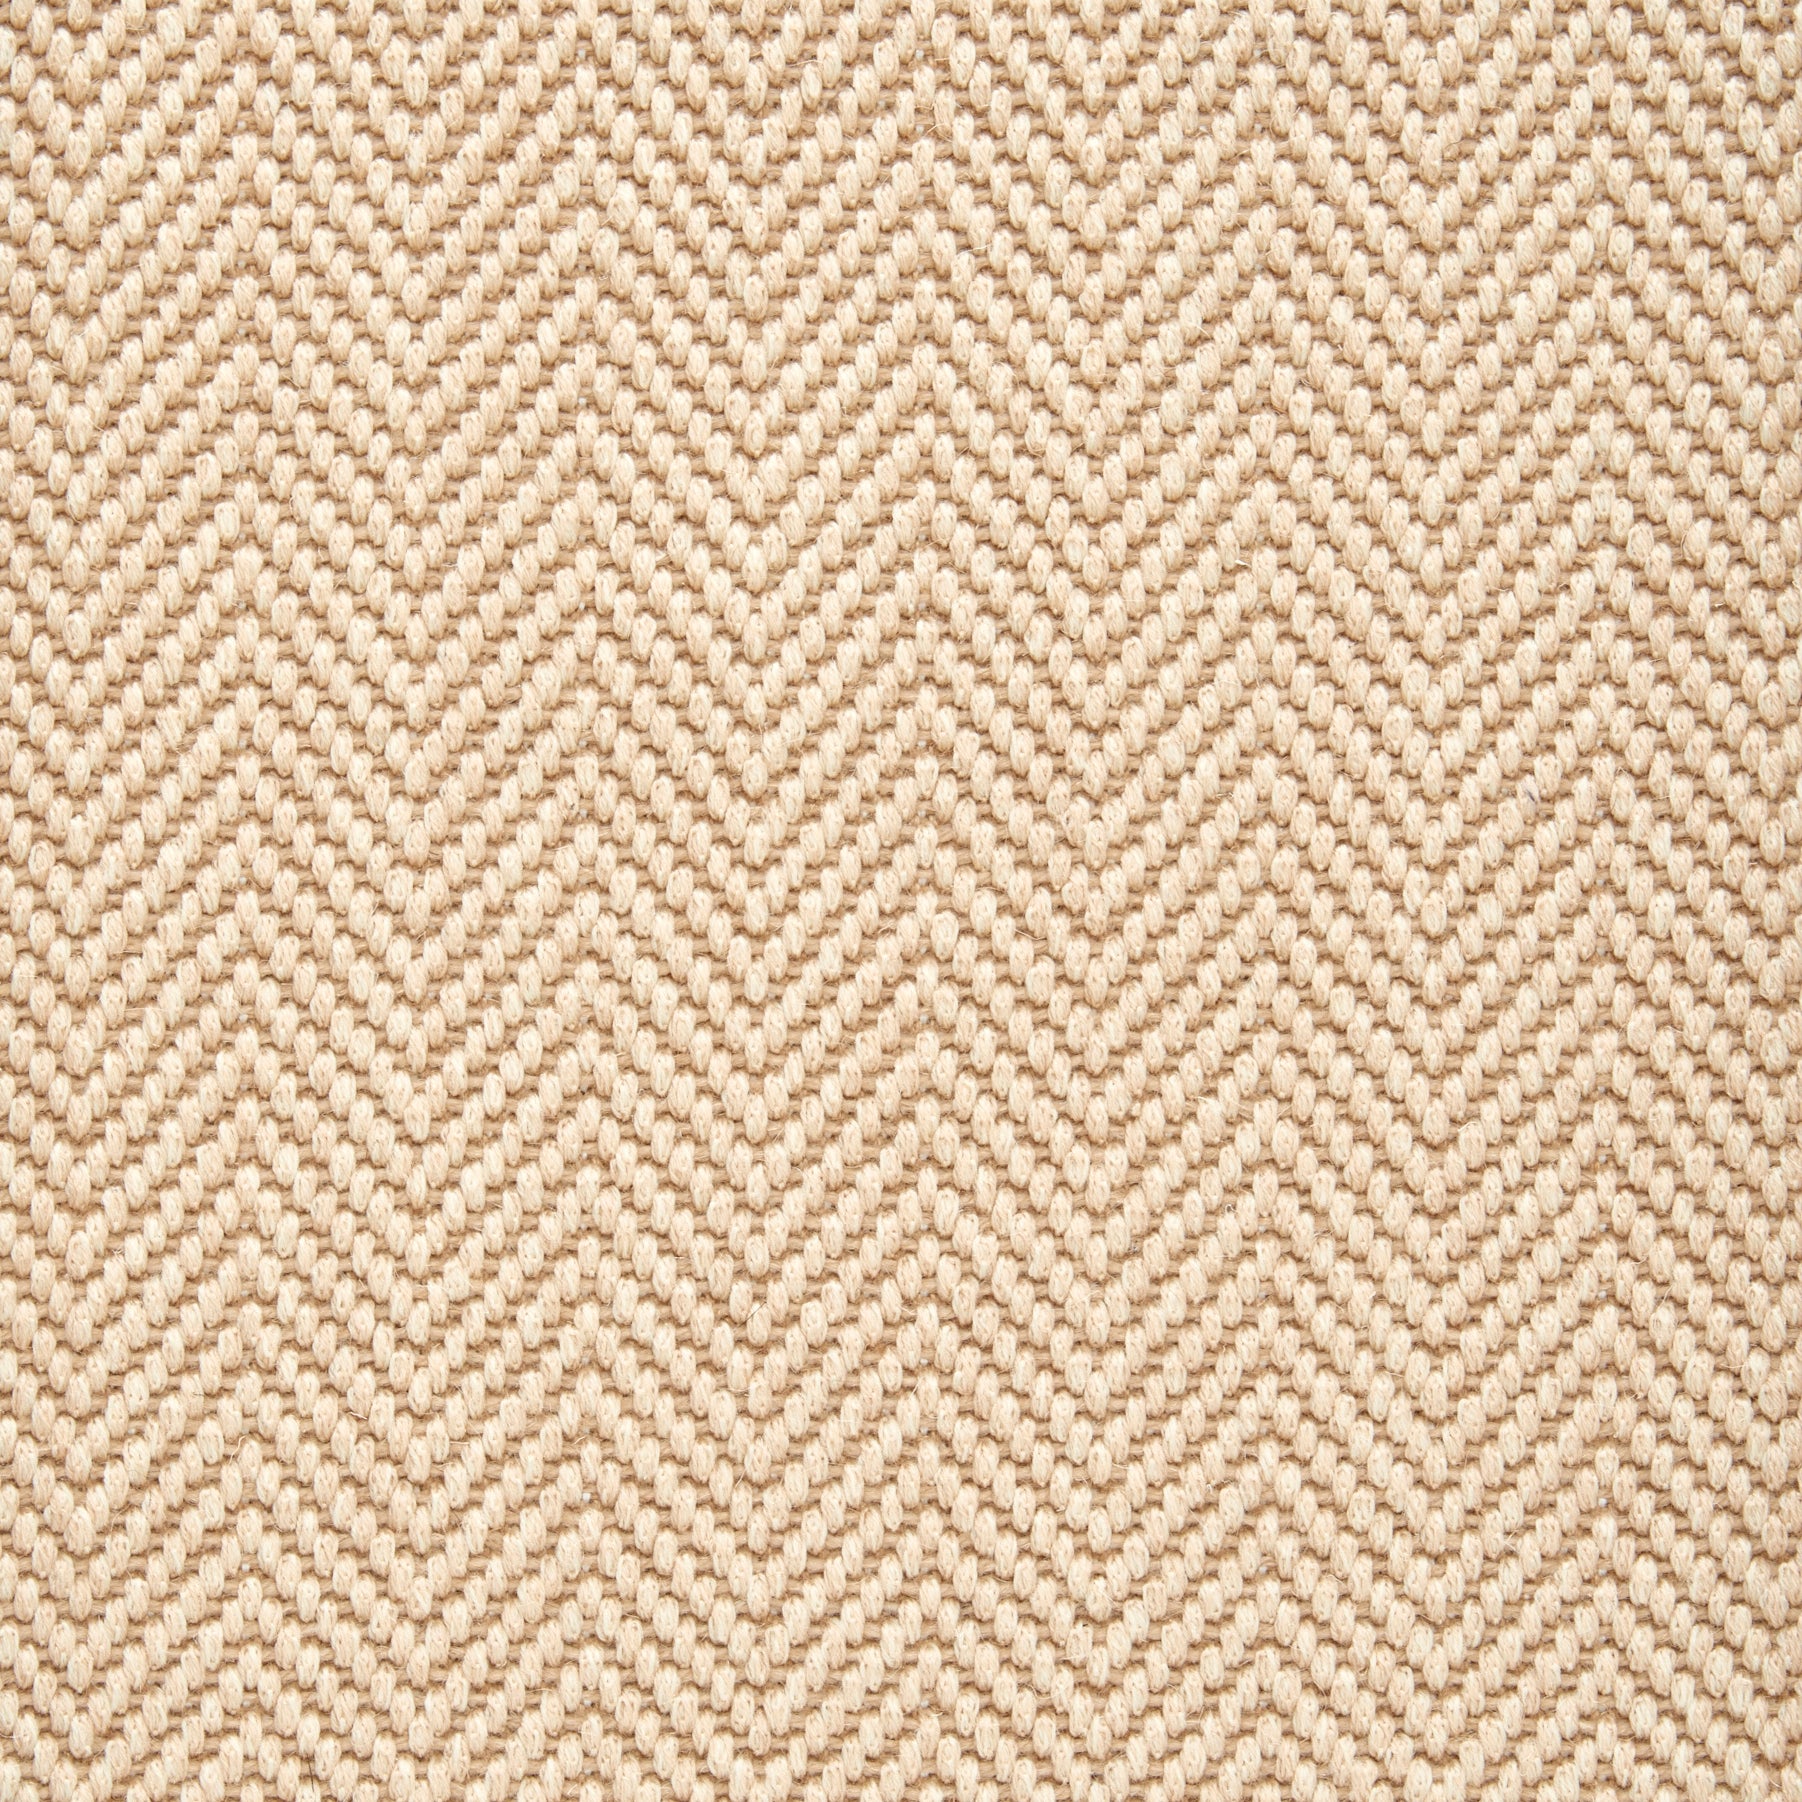 Wool broadloom carpet swatch in a herringbone weave in warm beige.